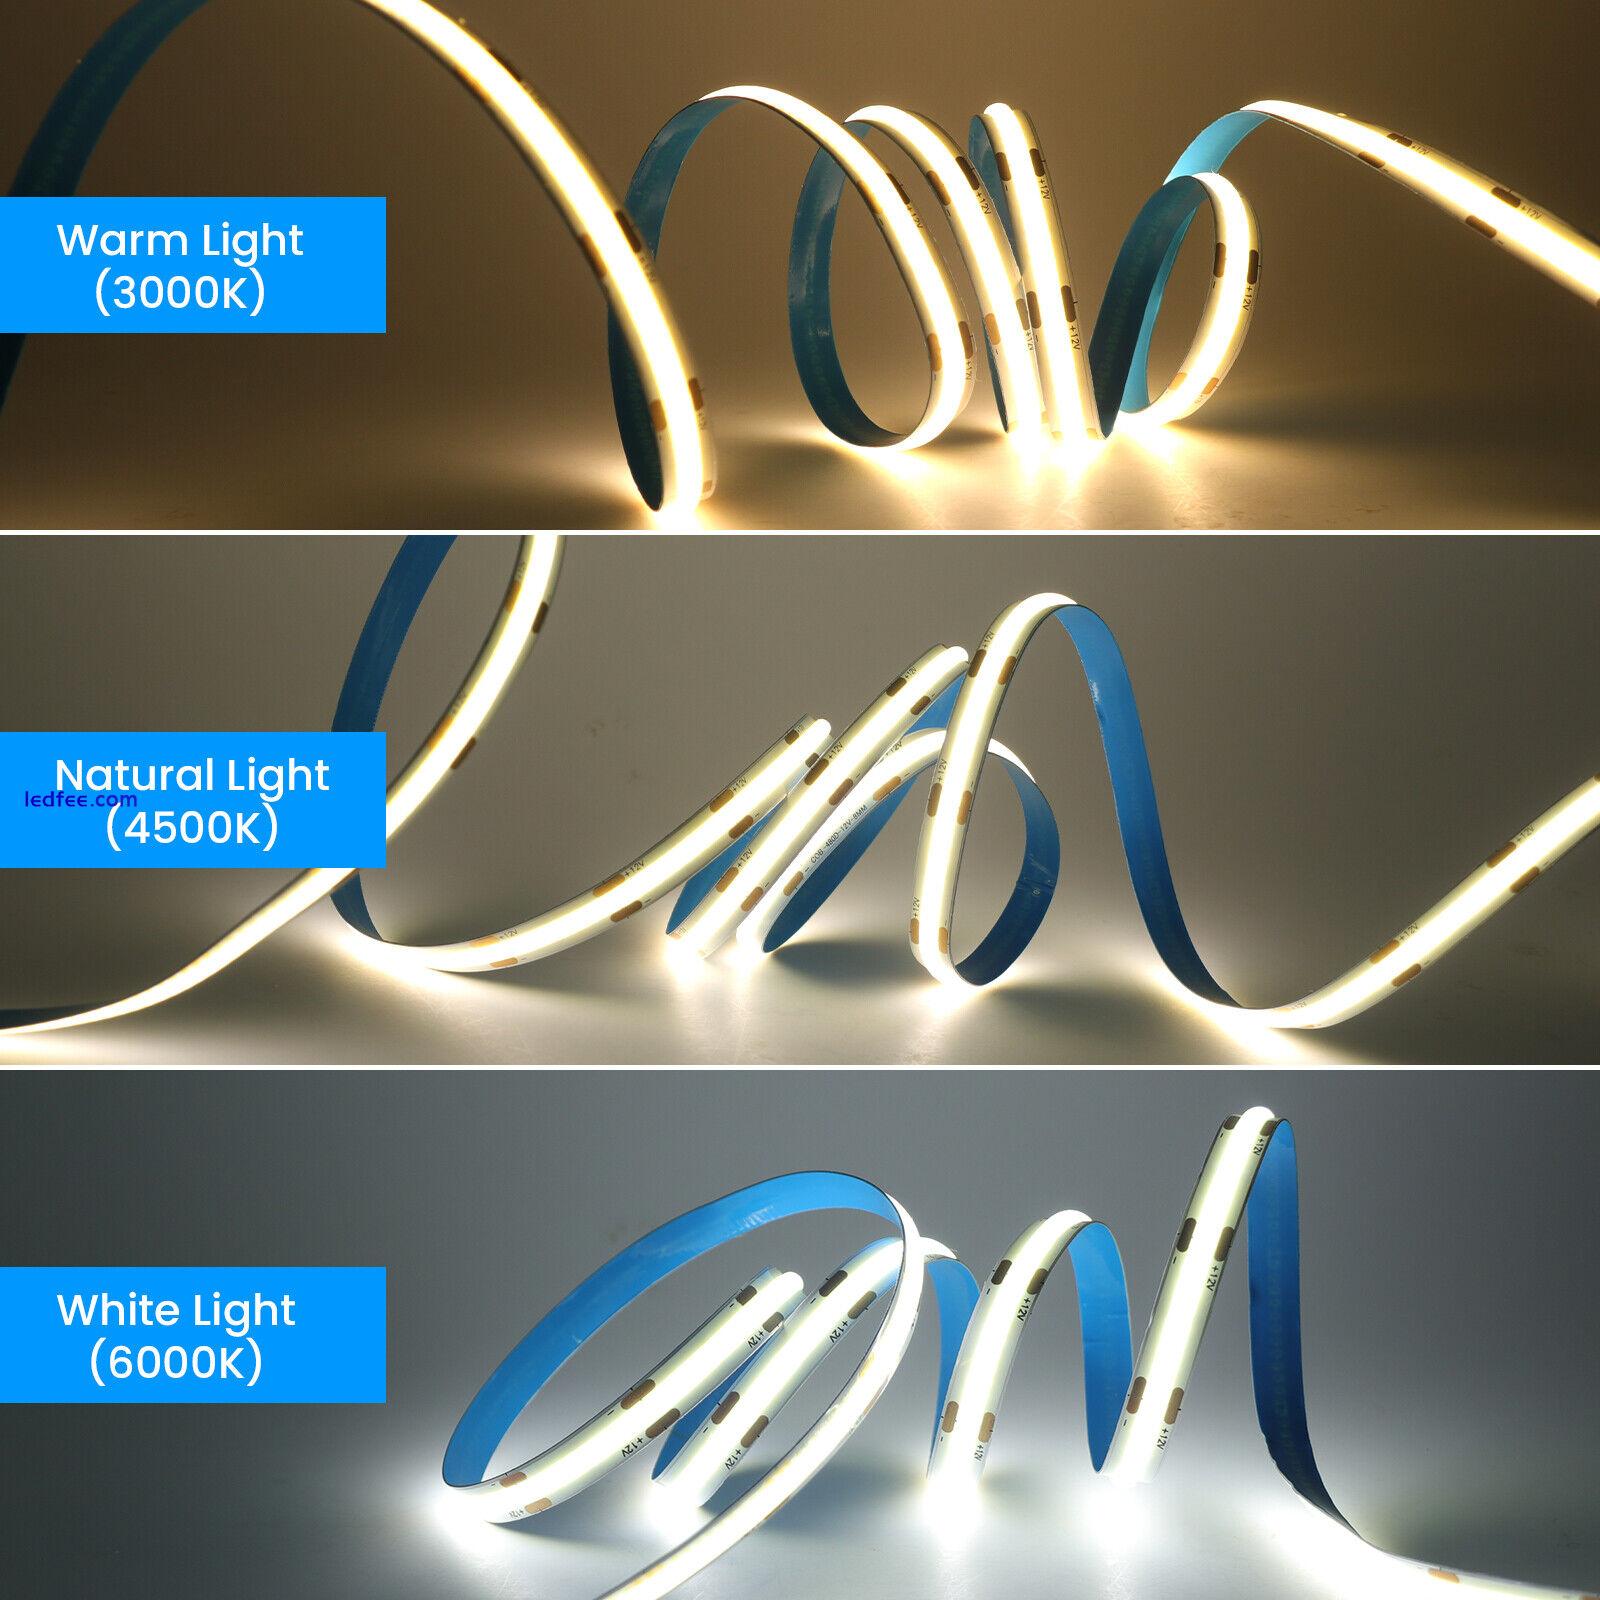 24V High Density COB LED Strip Lights Flexible Tape Rope Cabinet Kitchen Light 2 